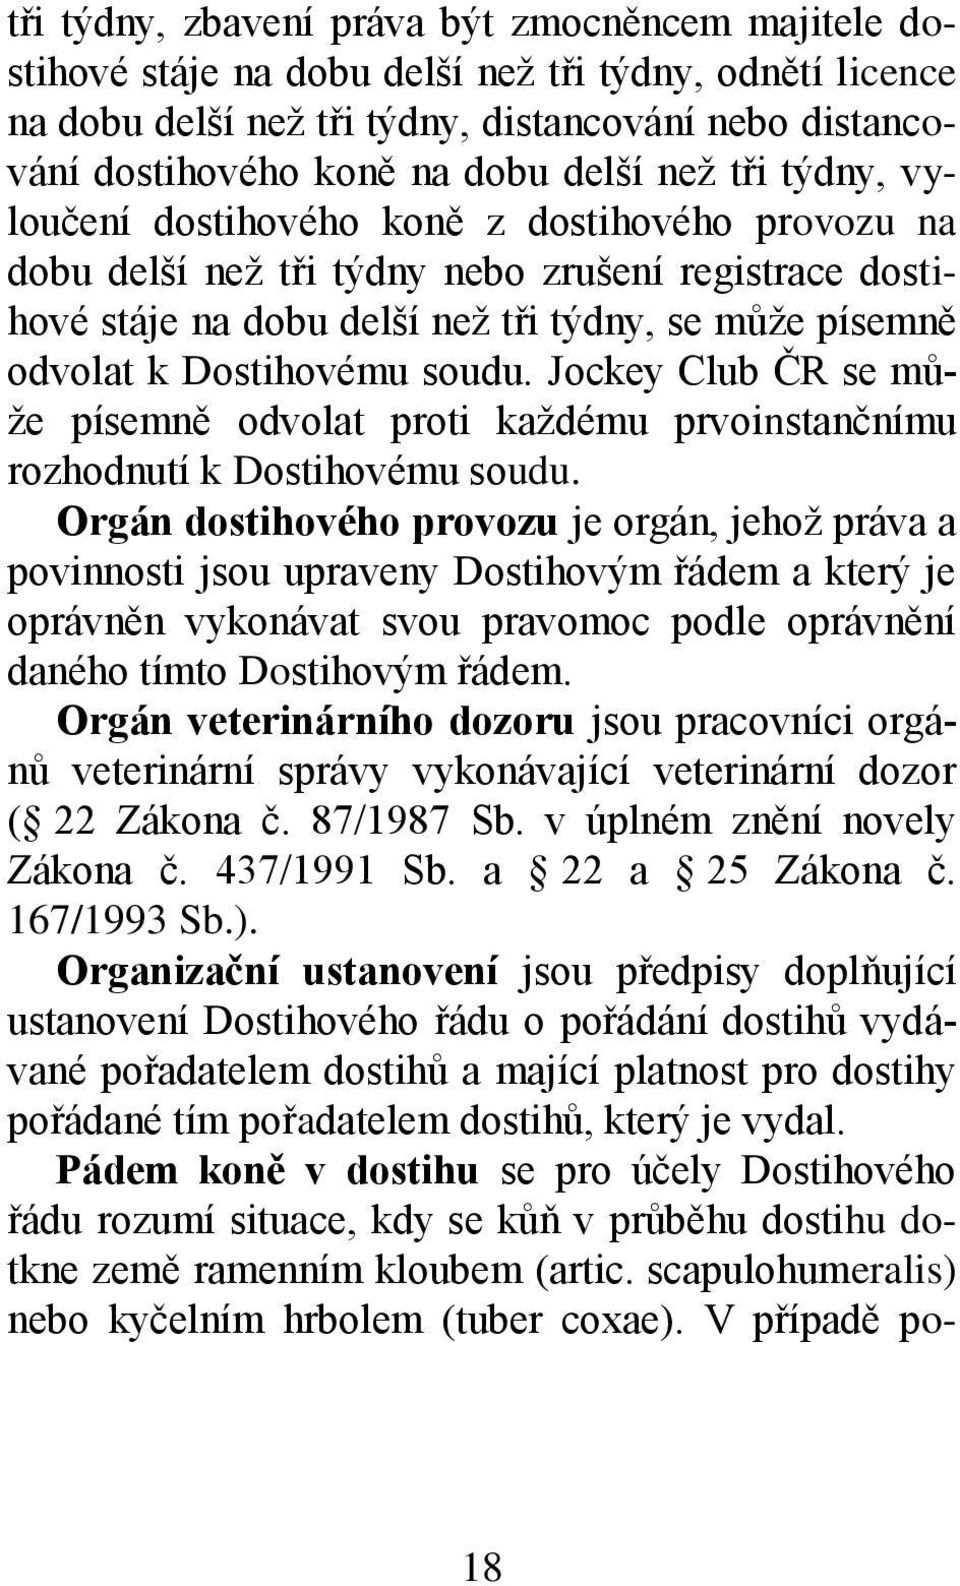 soudu. Jockey Club ČR se může písemně odvolat proti každému prvoinstančnímu rozhodnutí k Dostihovému soudu.